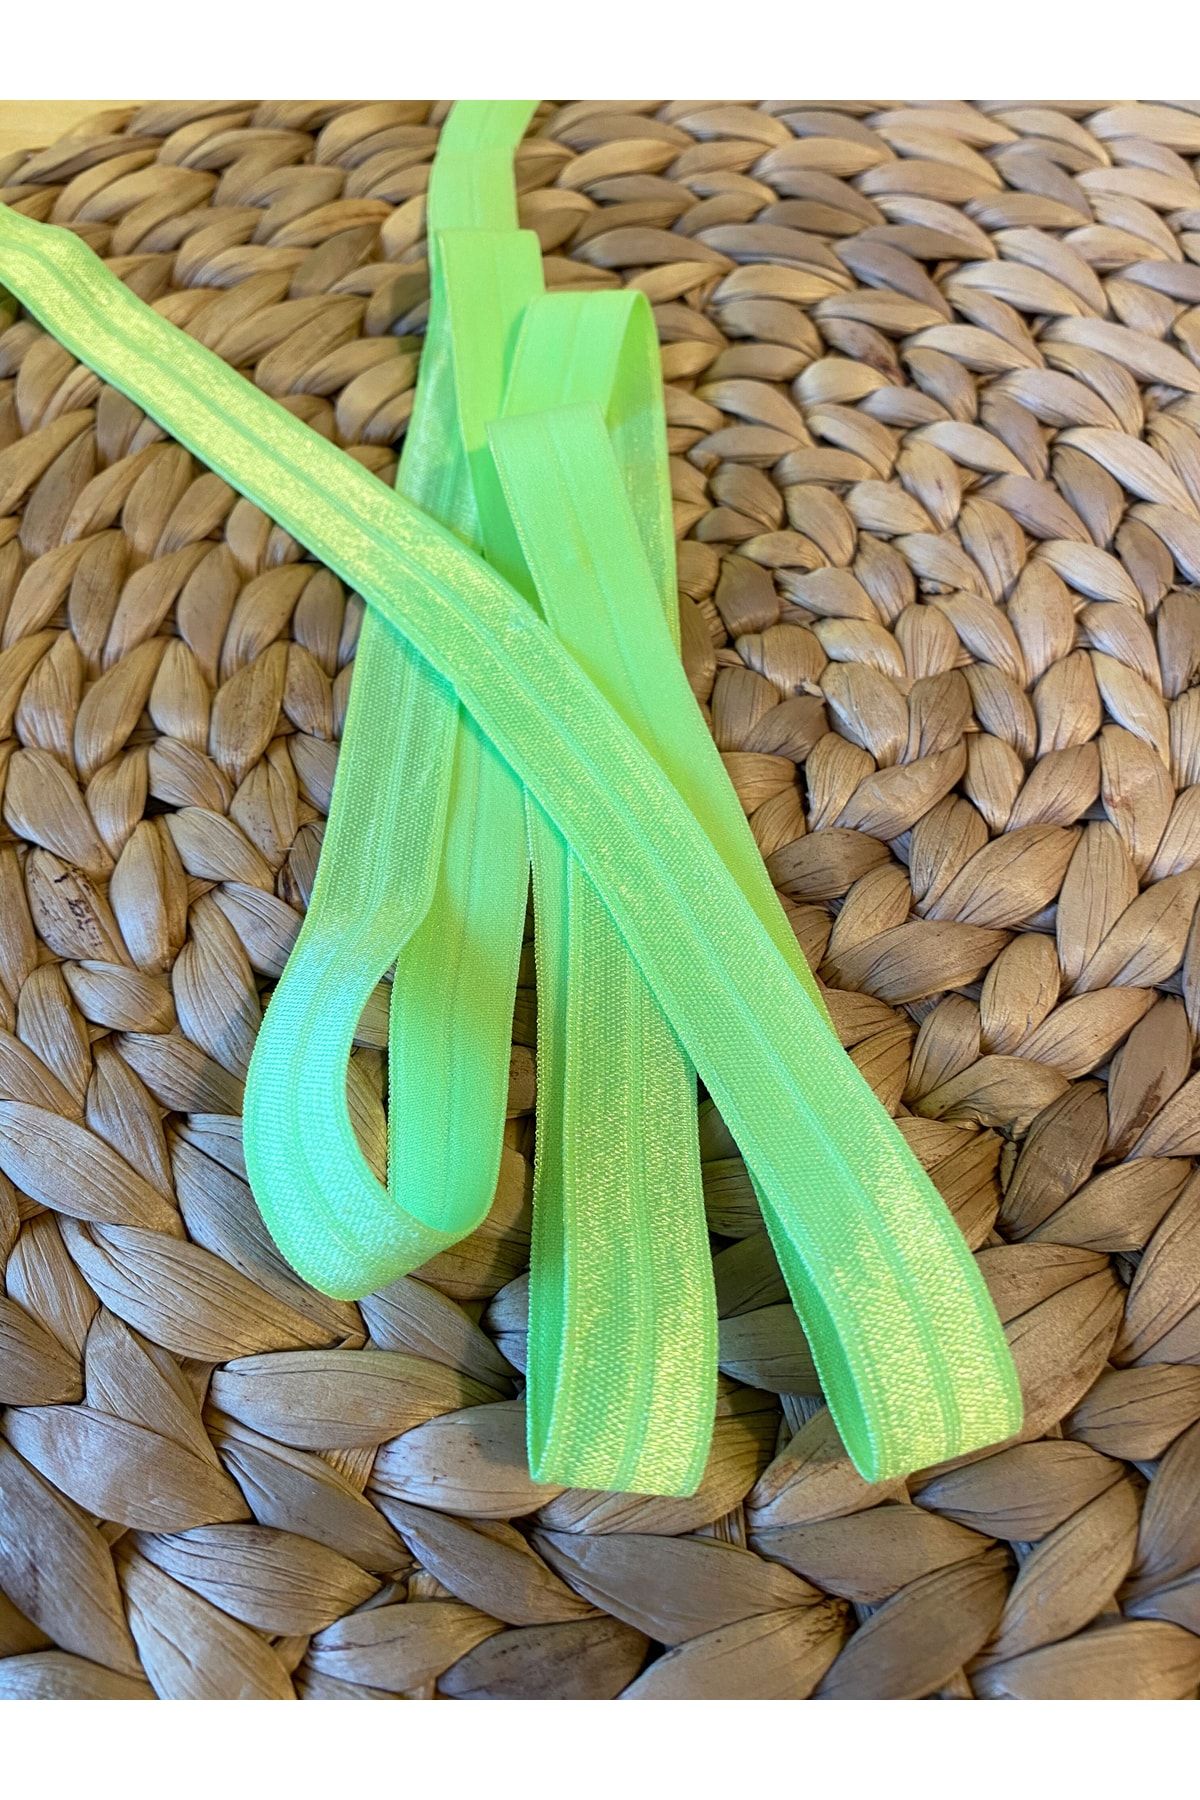 Baby Fehn Neon Yeşil Saç Bandı Için Lastik Turuncu, 1.6cm 1 metre